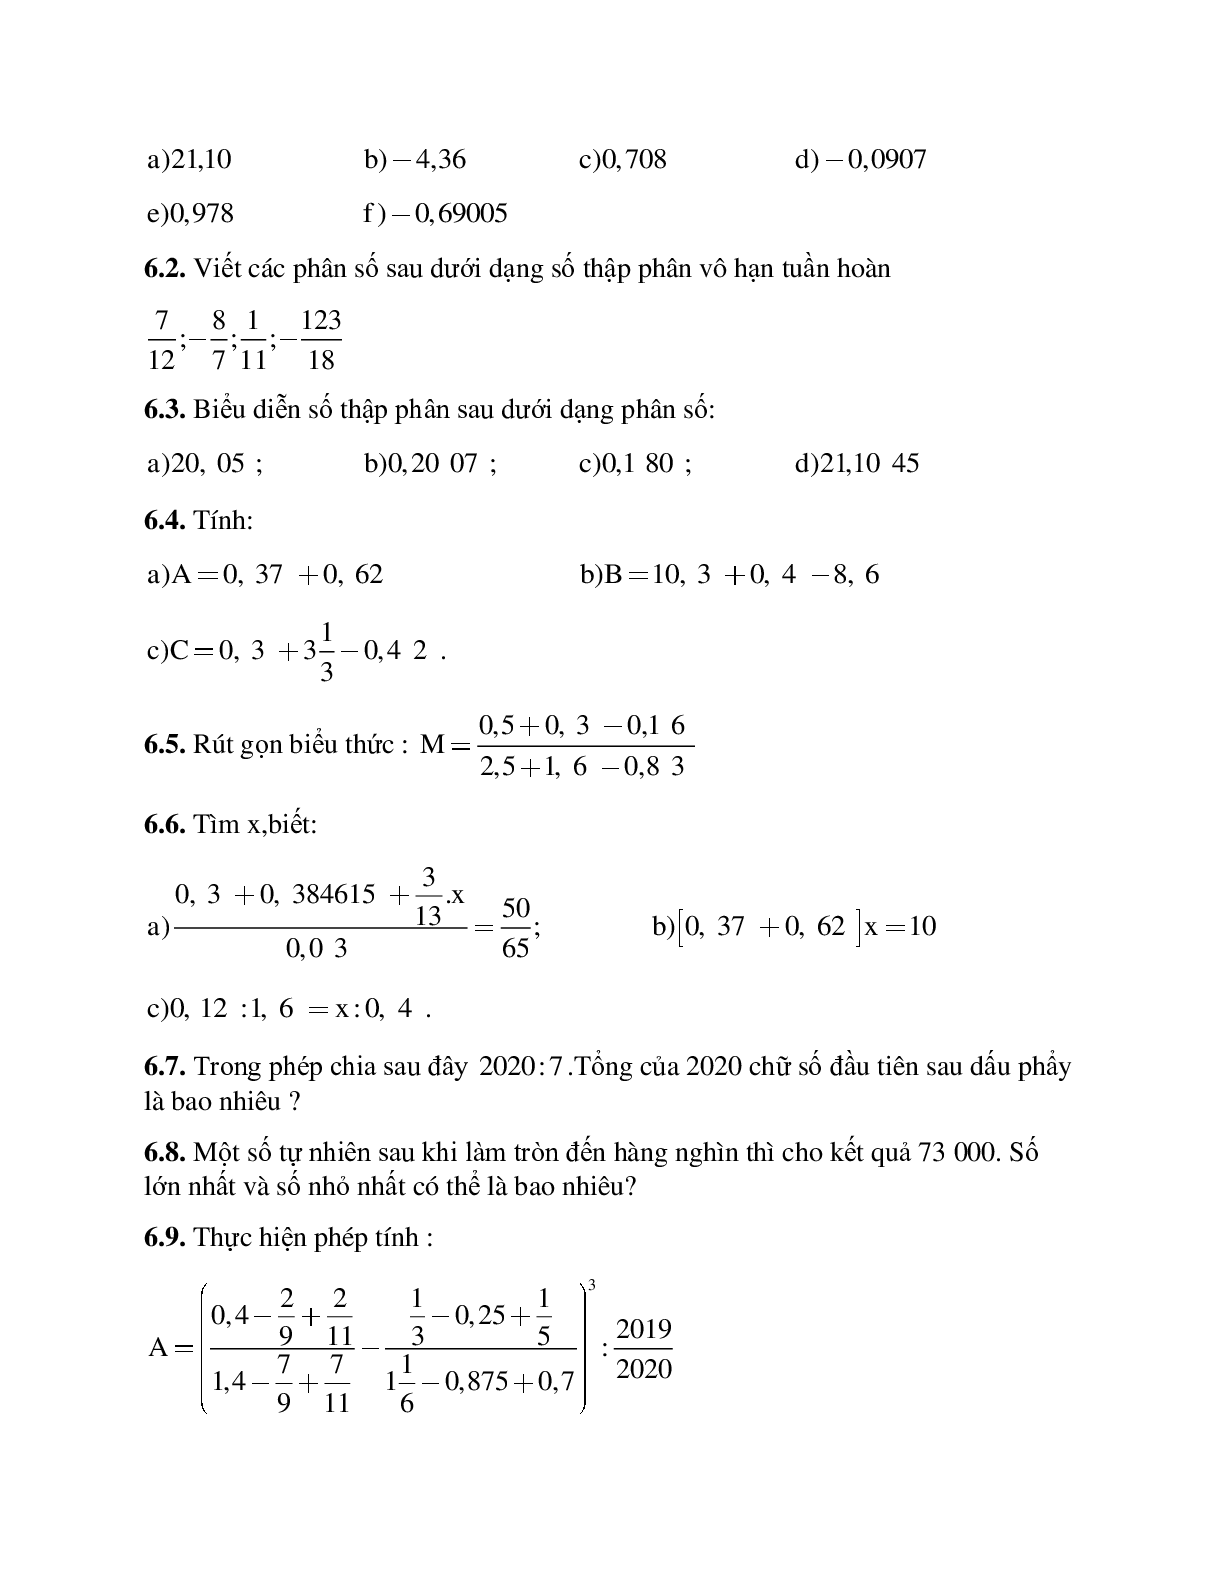 Hệ thống bài tập về Số thập phân hữu hạn - Số thập phân vô hạn tuần hoàn - Làm tròn số có lời giải (trang 5)